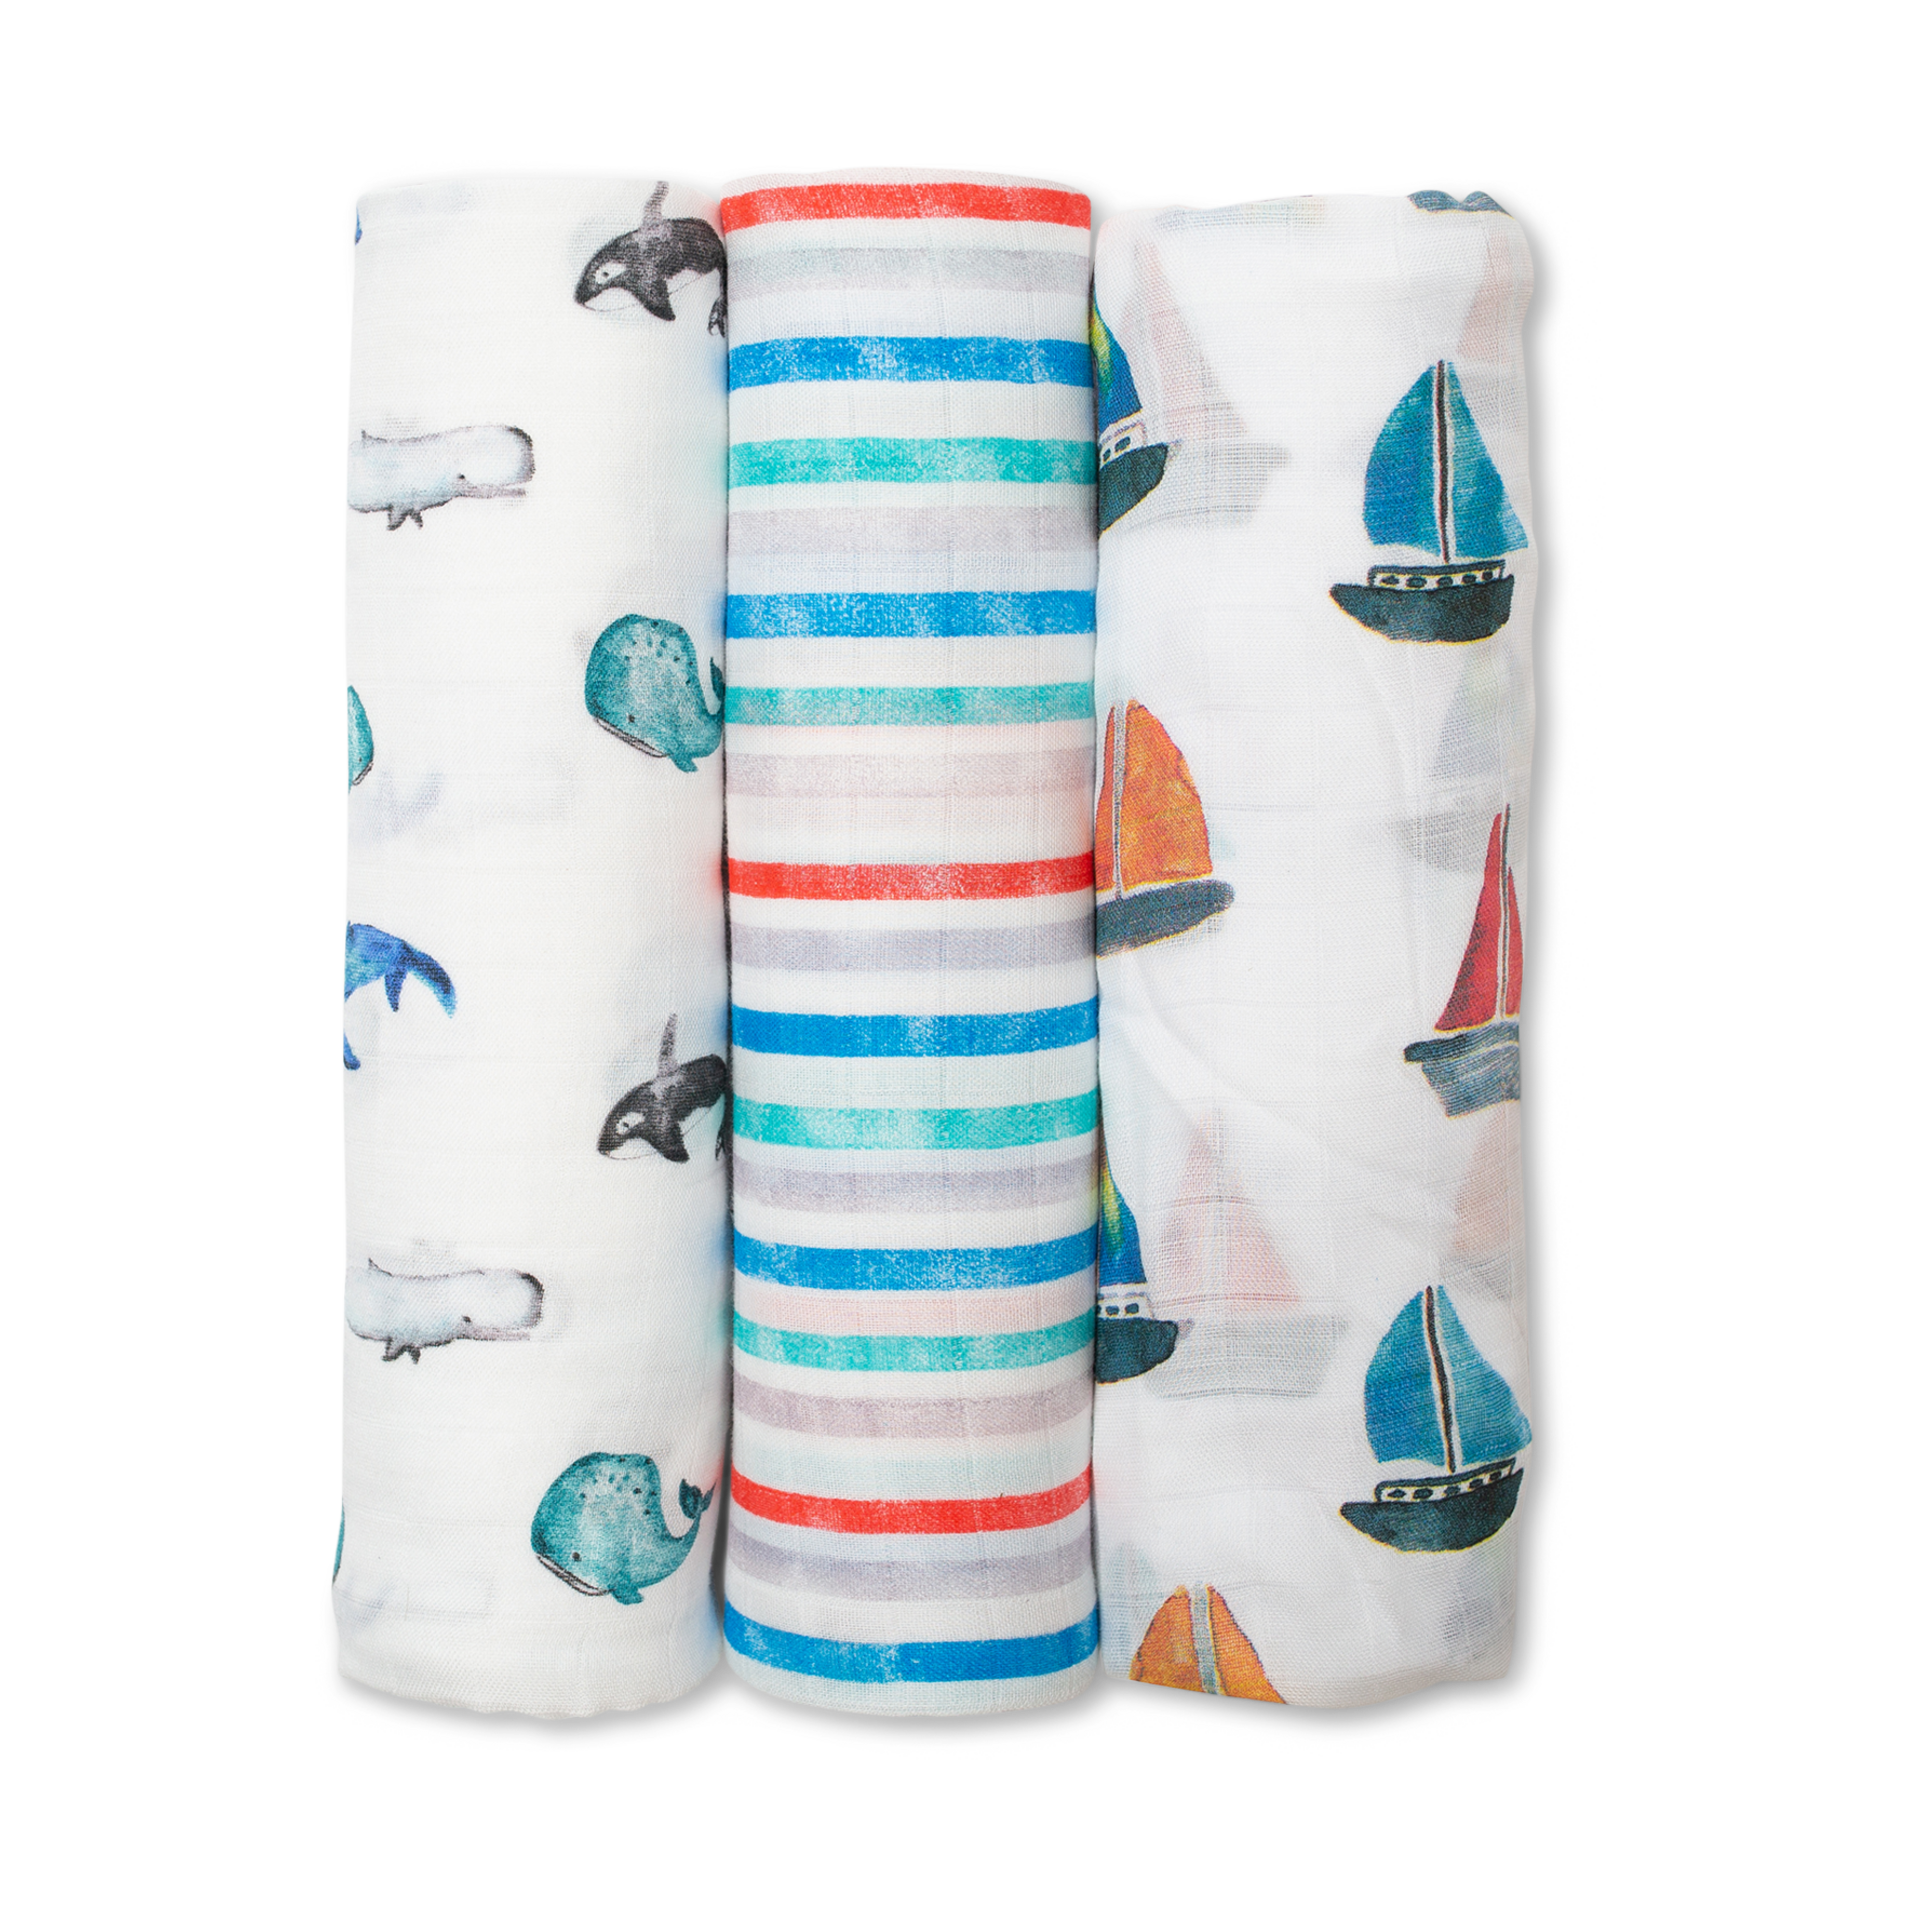 Crib Sheet Lulujo Muslin Bamboo Baby Wraps Change Mat Nursing Cover Blanket 